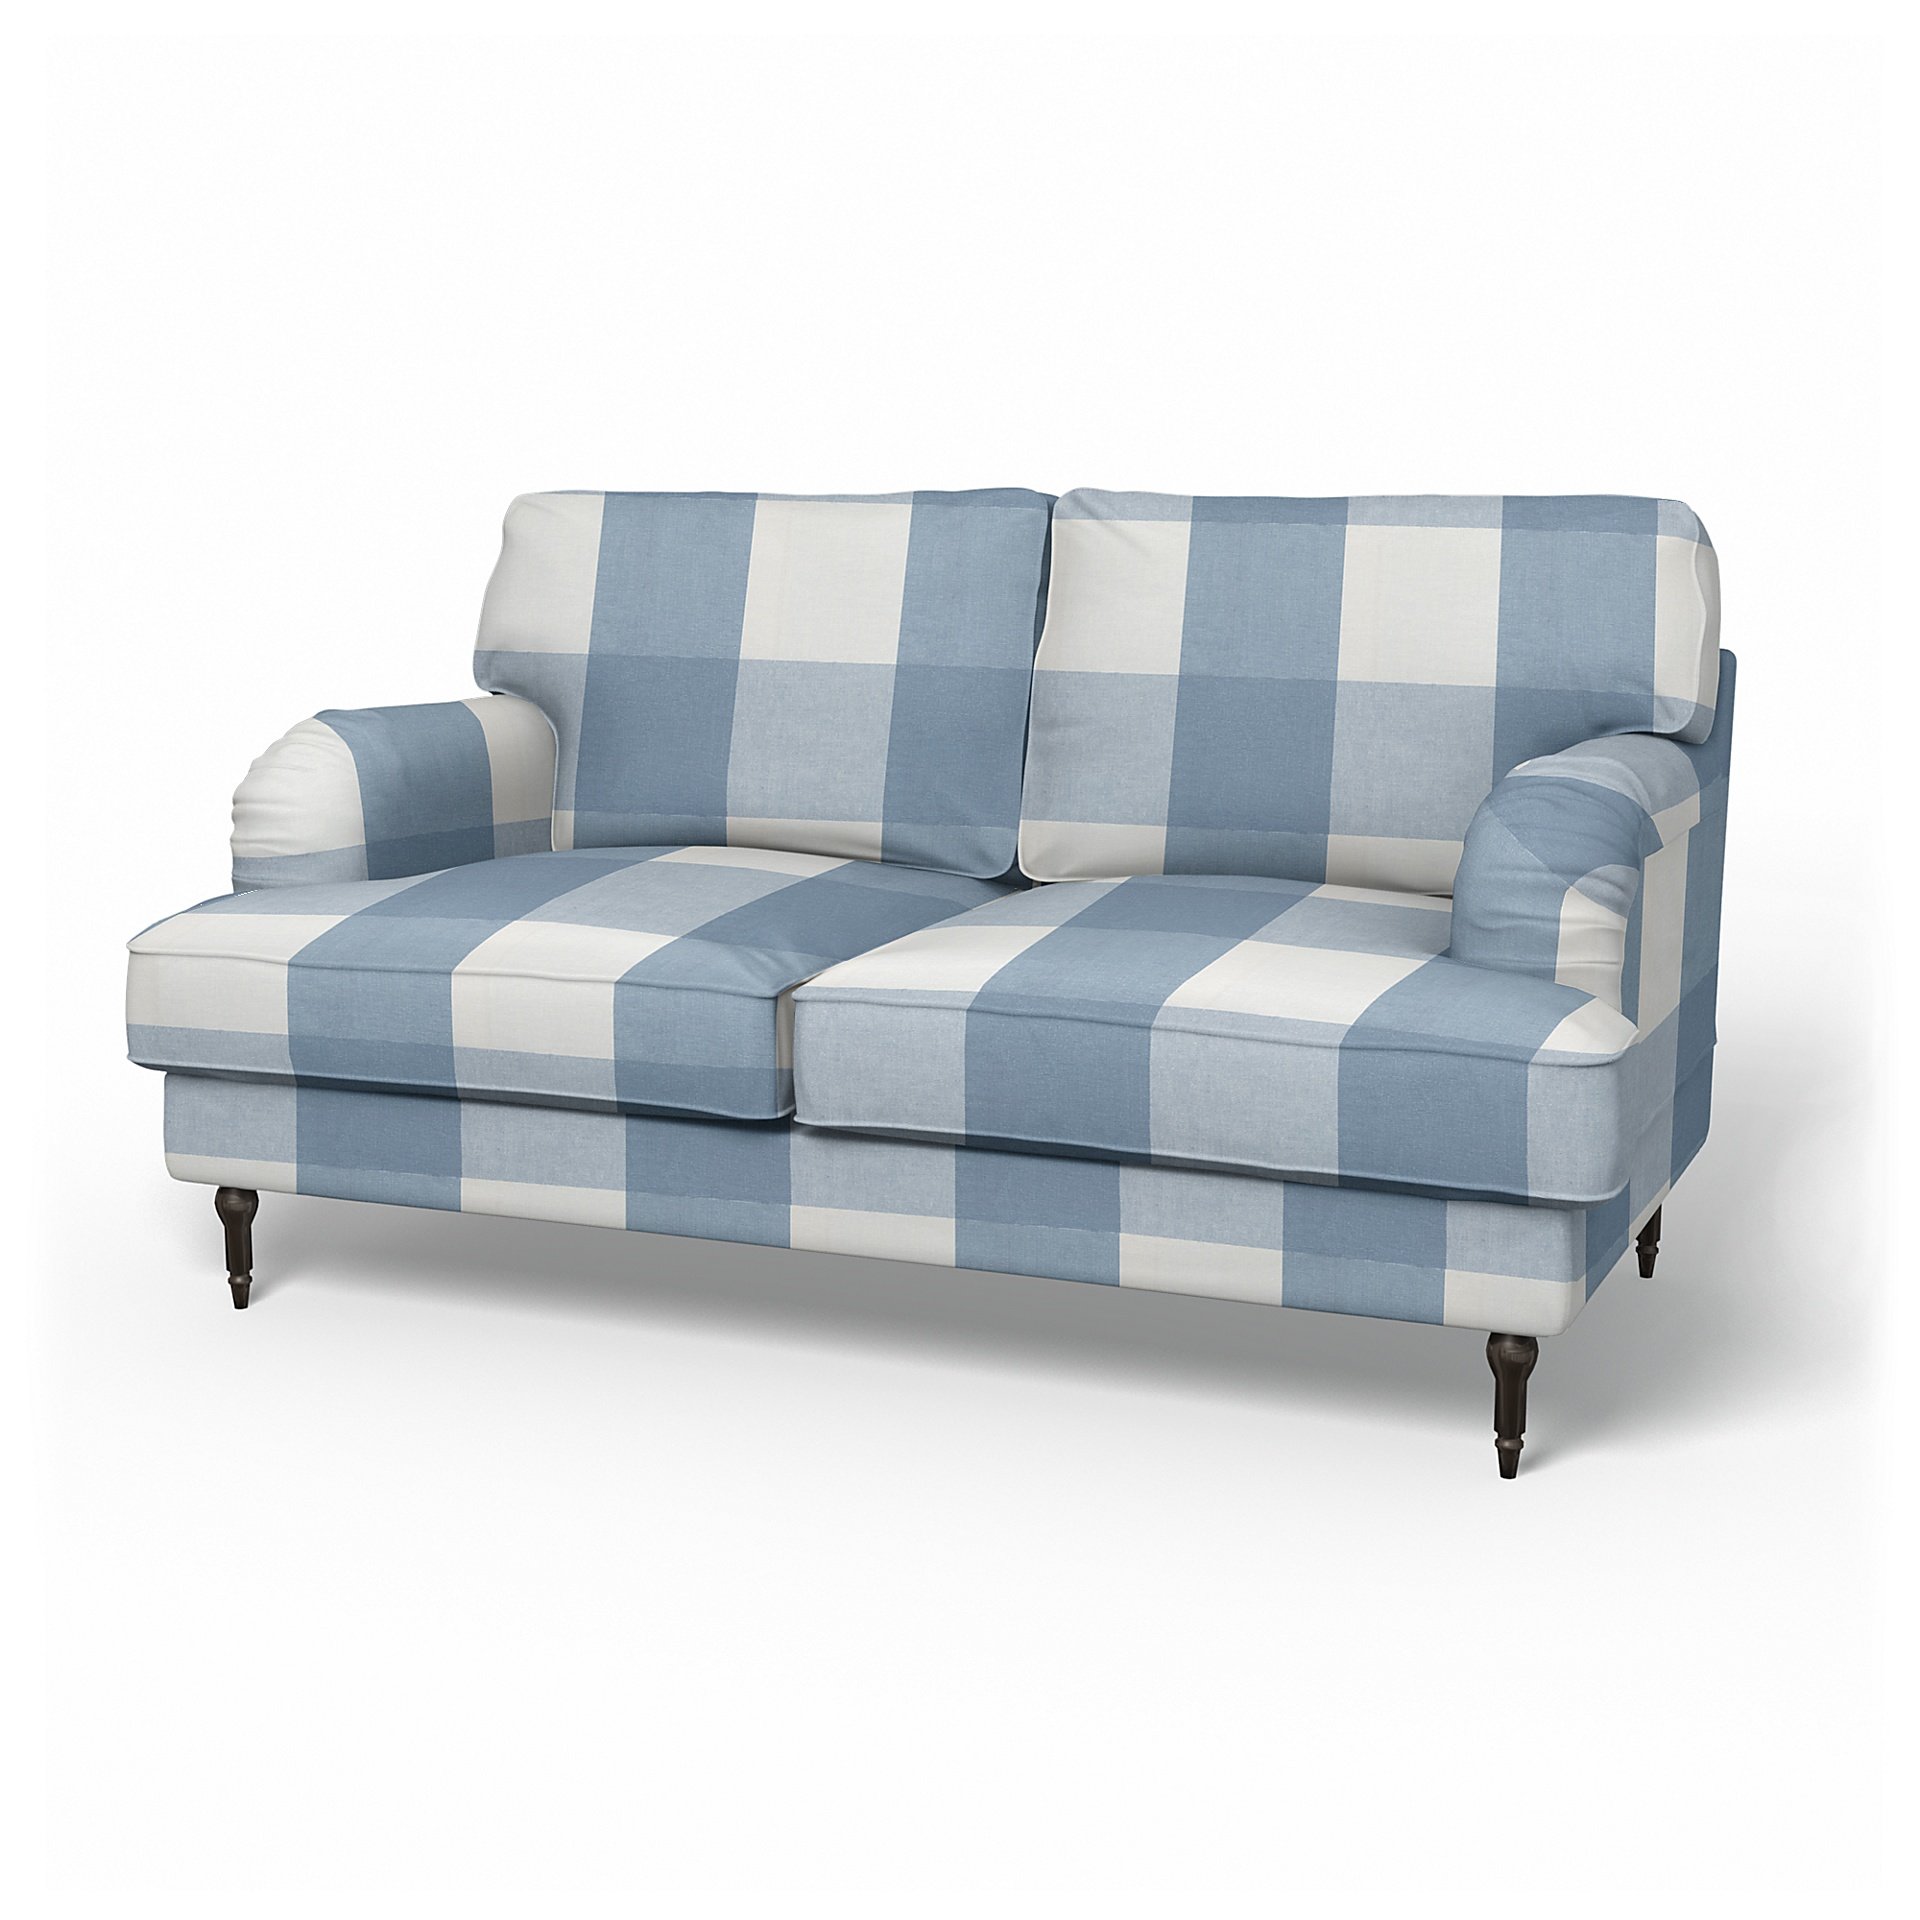 IKEA - Stocksund 2 Seater Sofa Cover, Sky Blue, Linen - Bemz